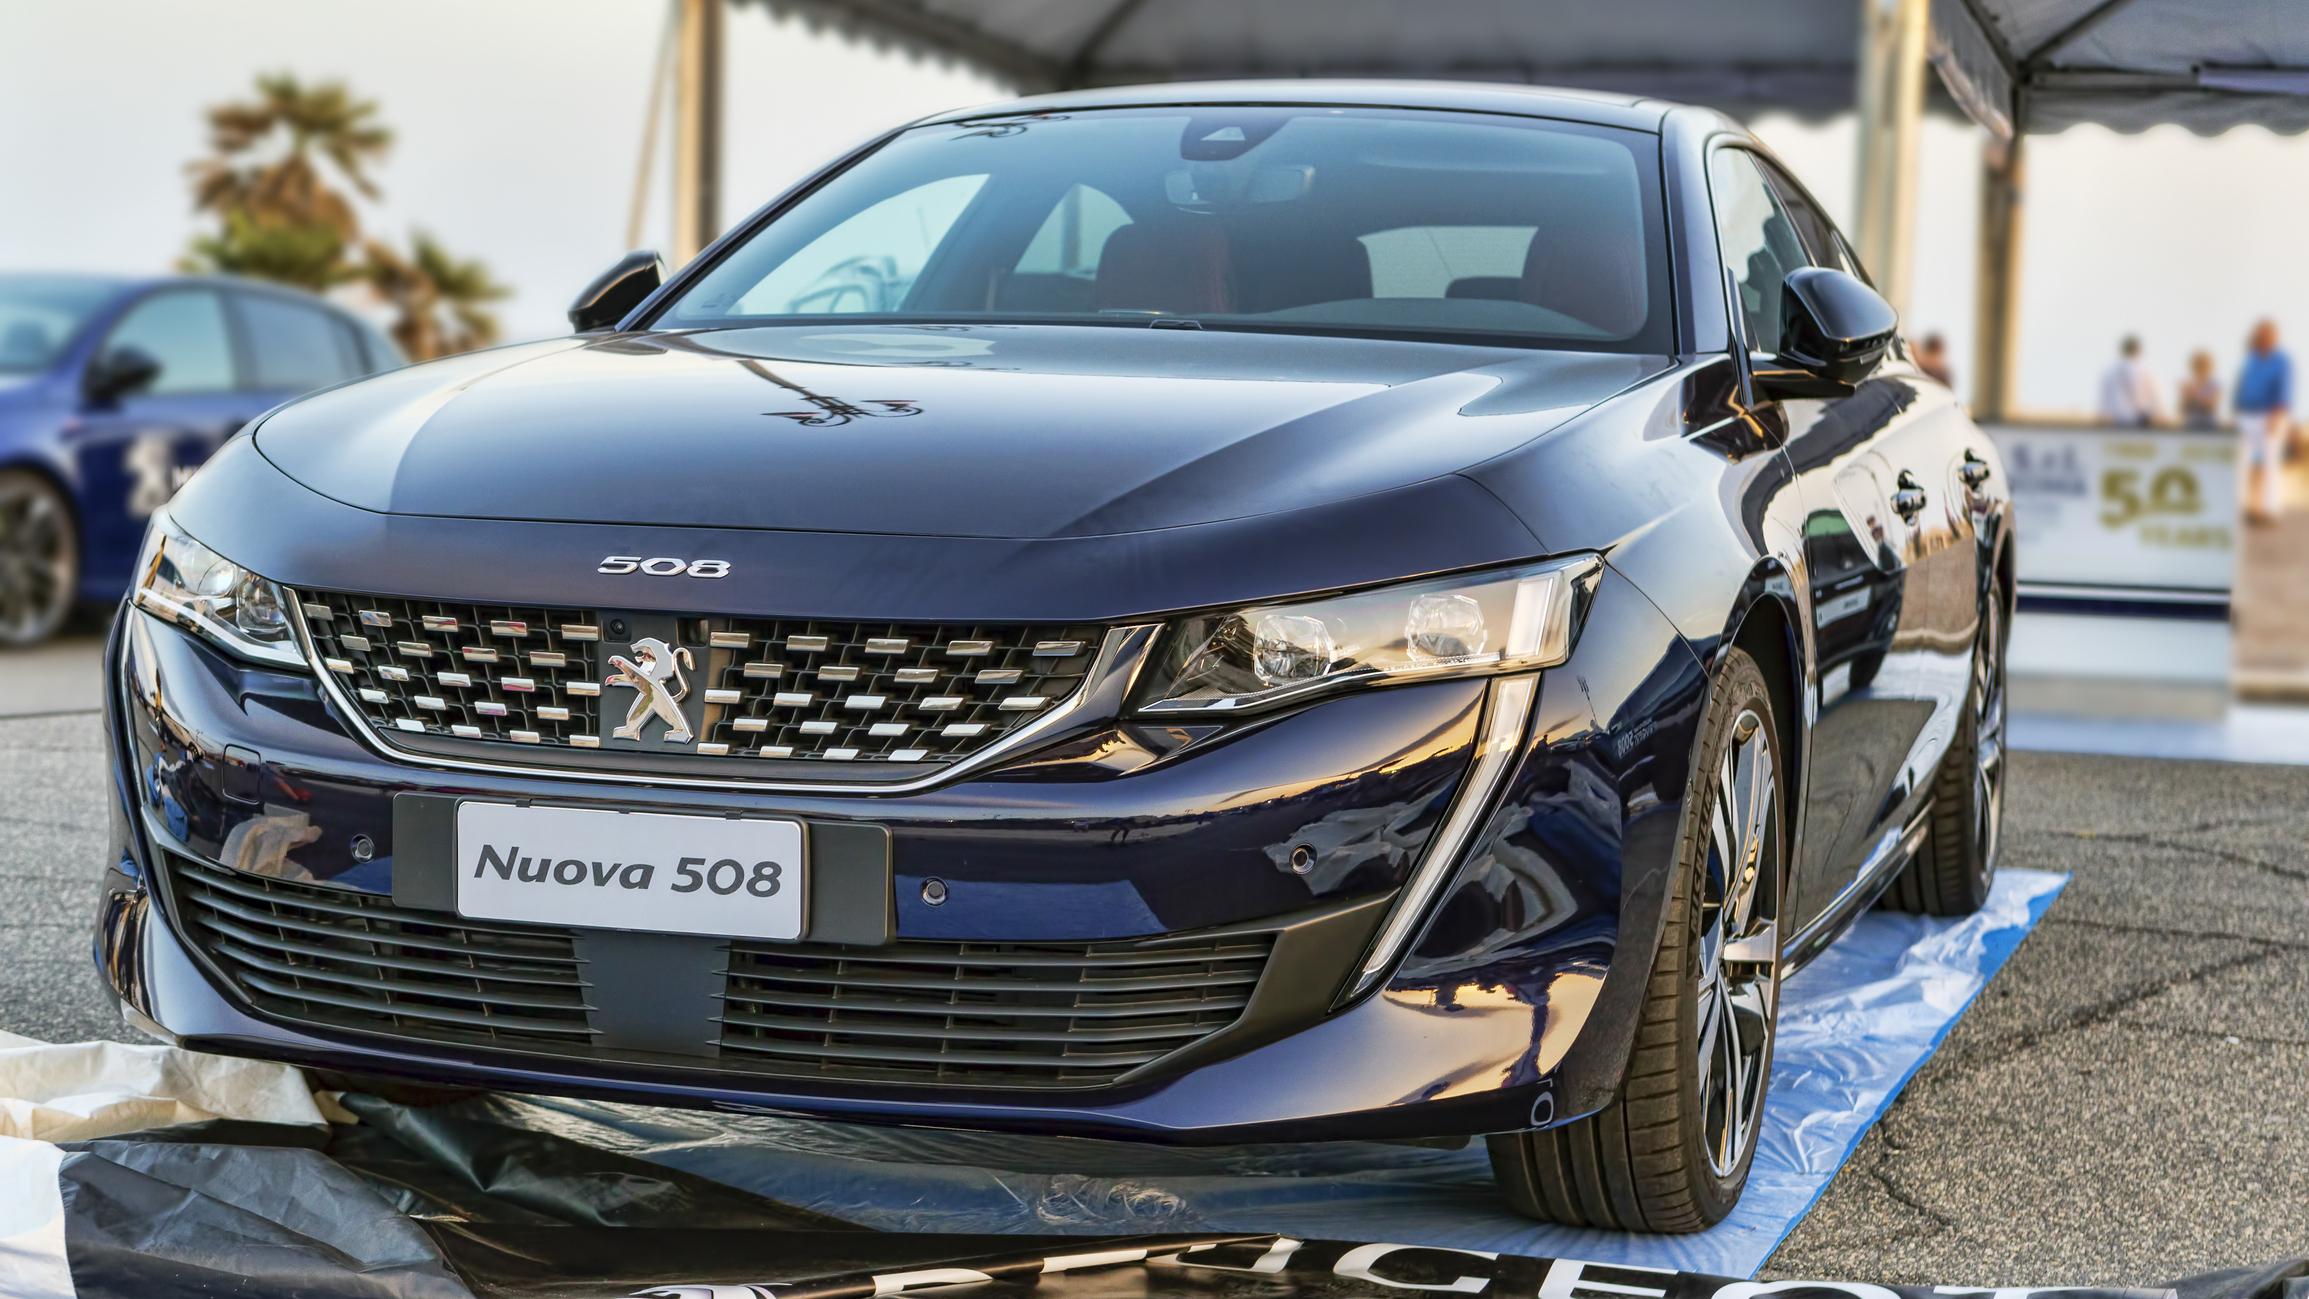 Peugeot 508 2018 neuve : les tarifs et les équipements de la voiture